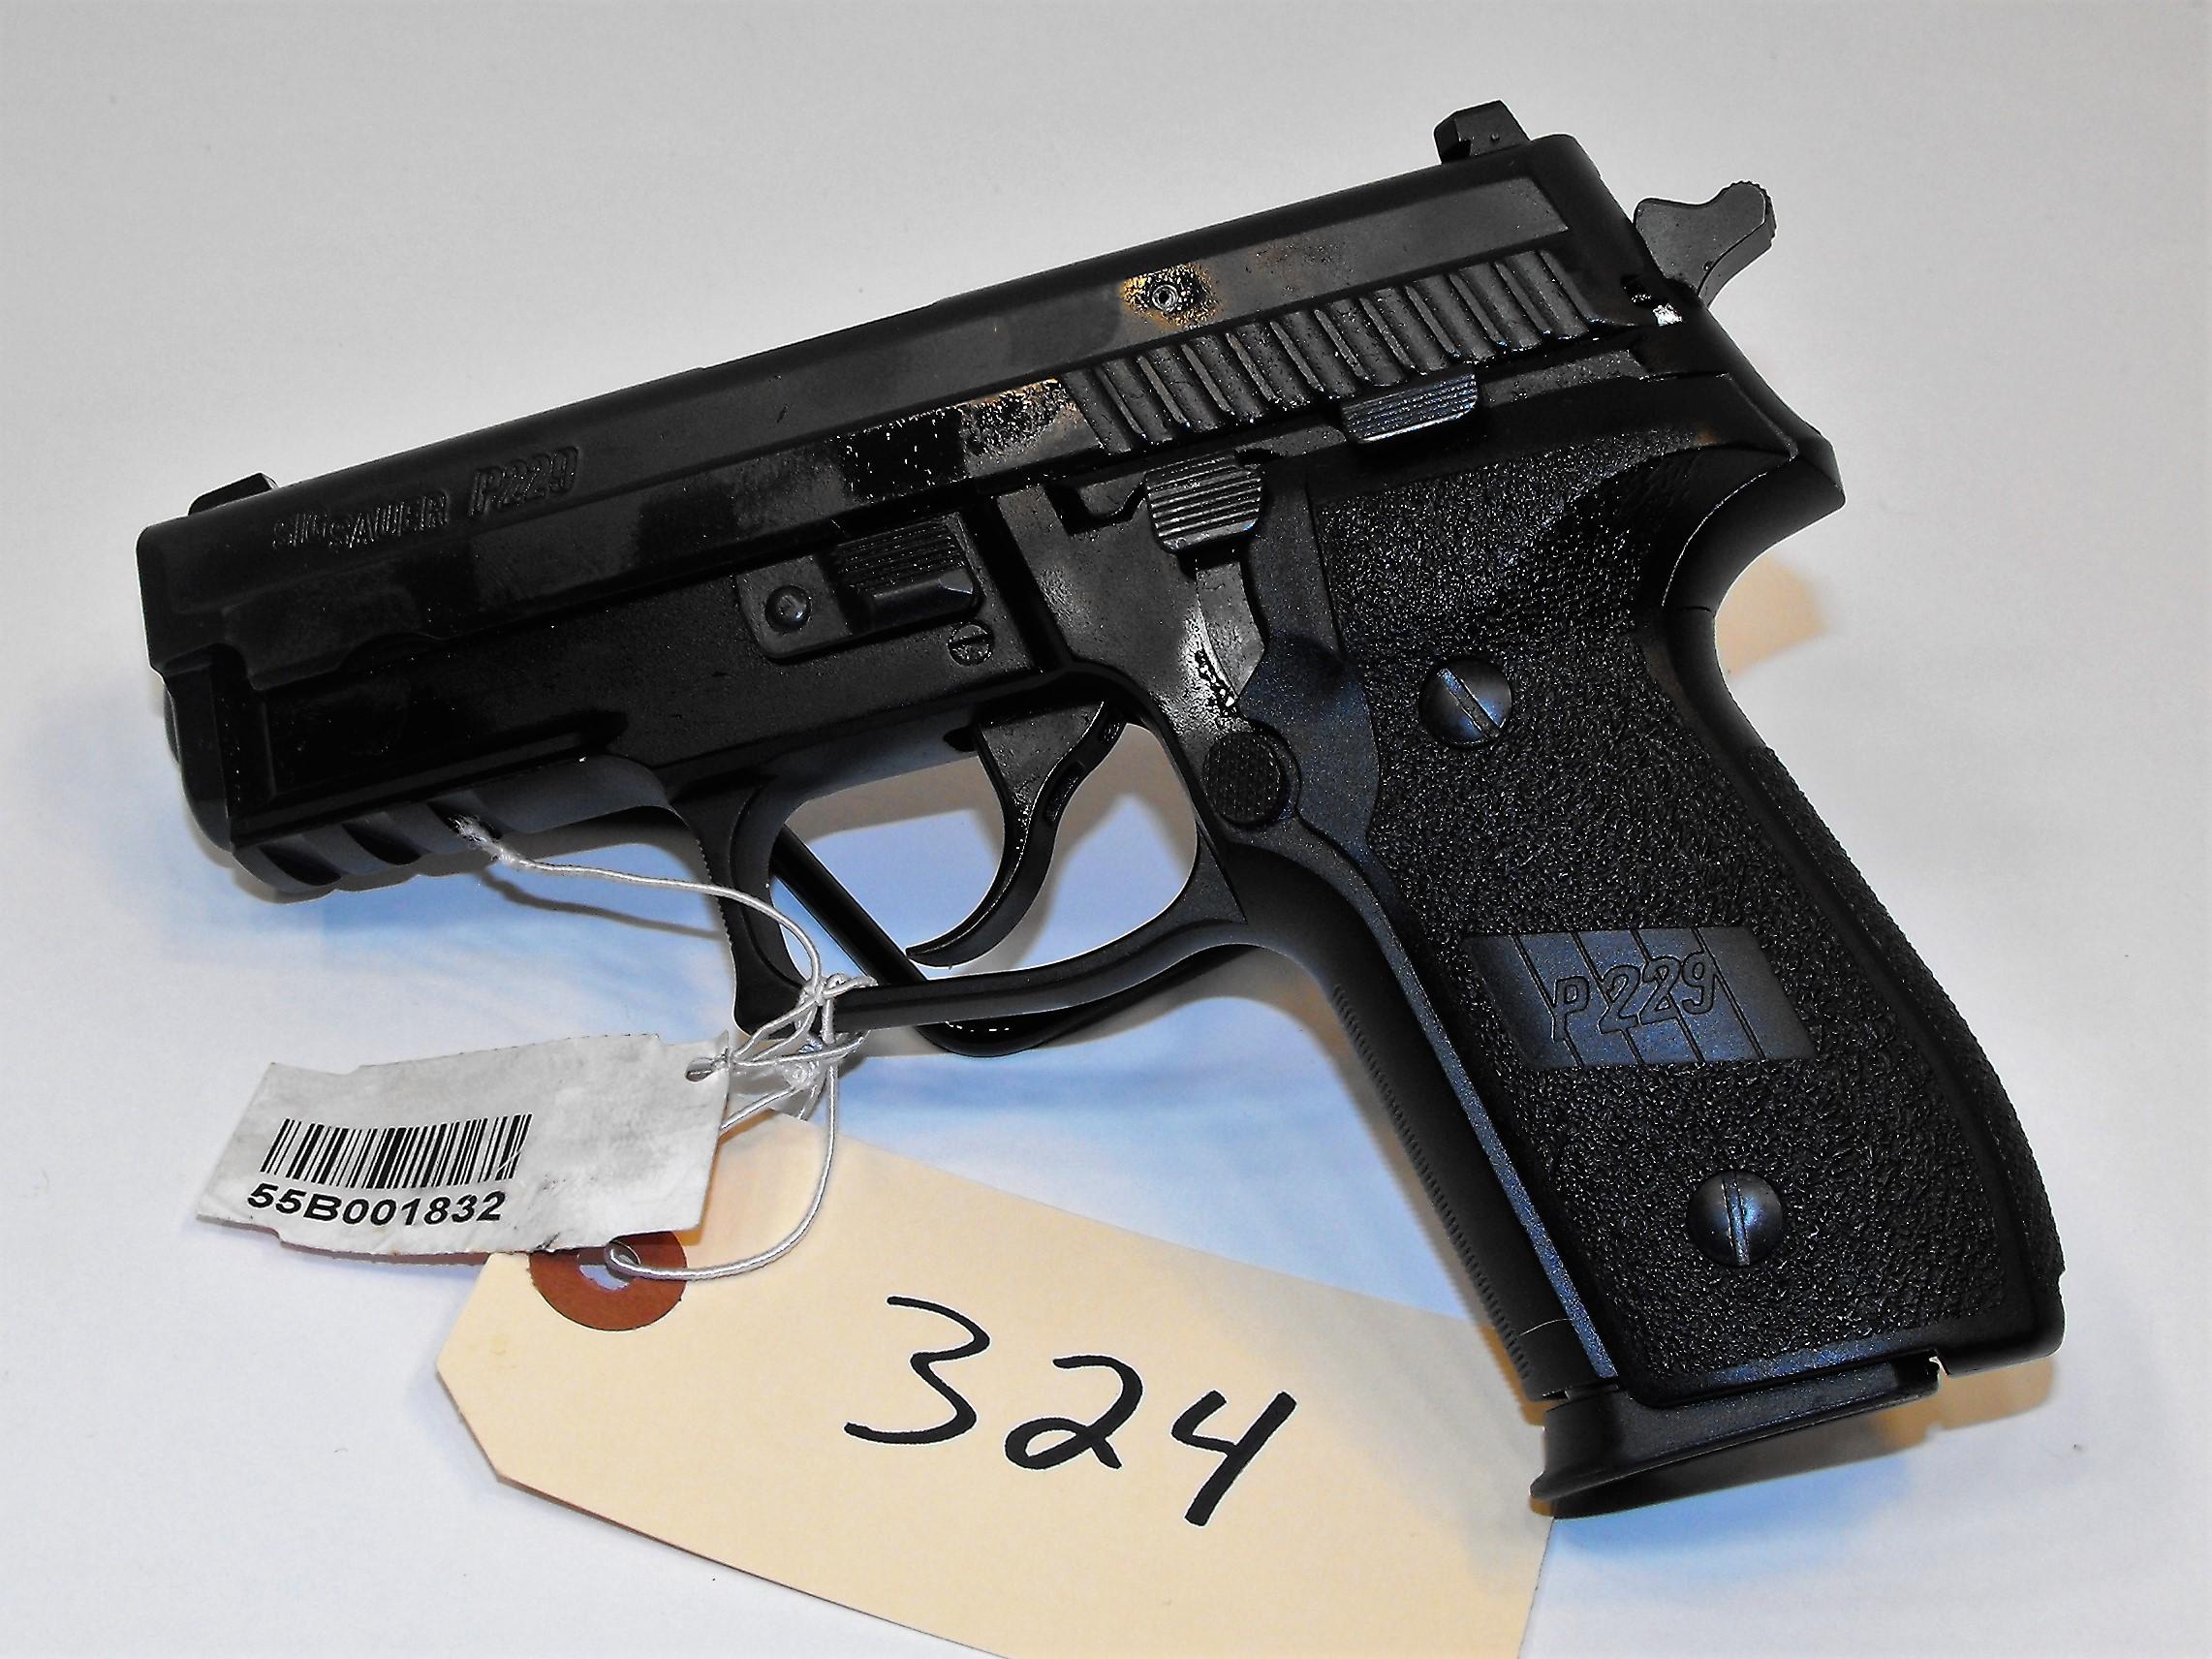 (R) Sig Sauer P220 40 S&W Pistol